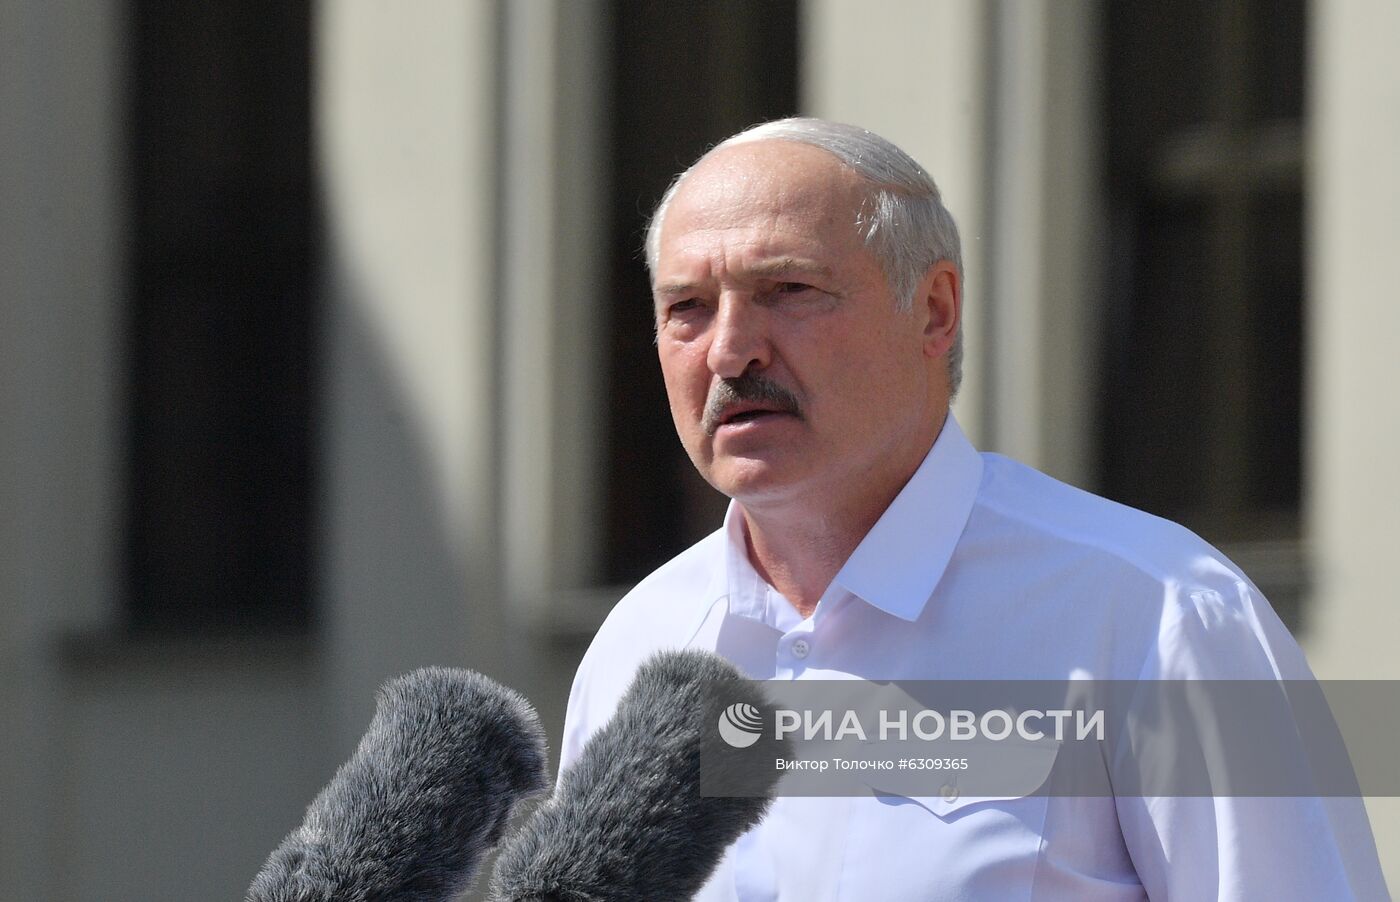 Митинг в поддержку действующего президента Белоруссии А. Лукашенко в Минске